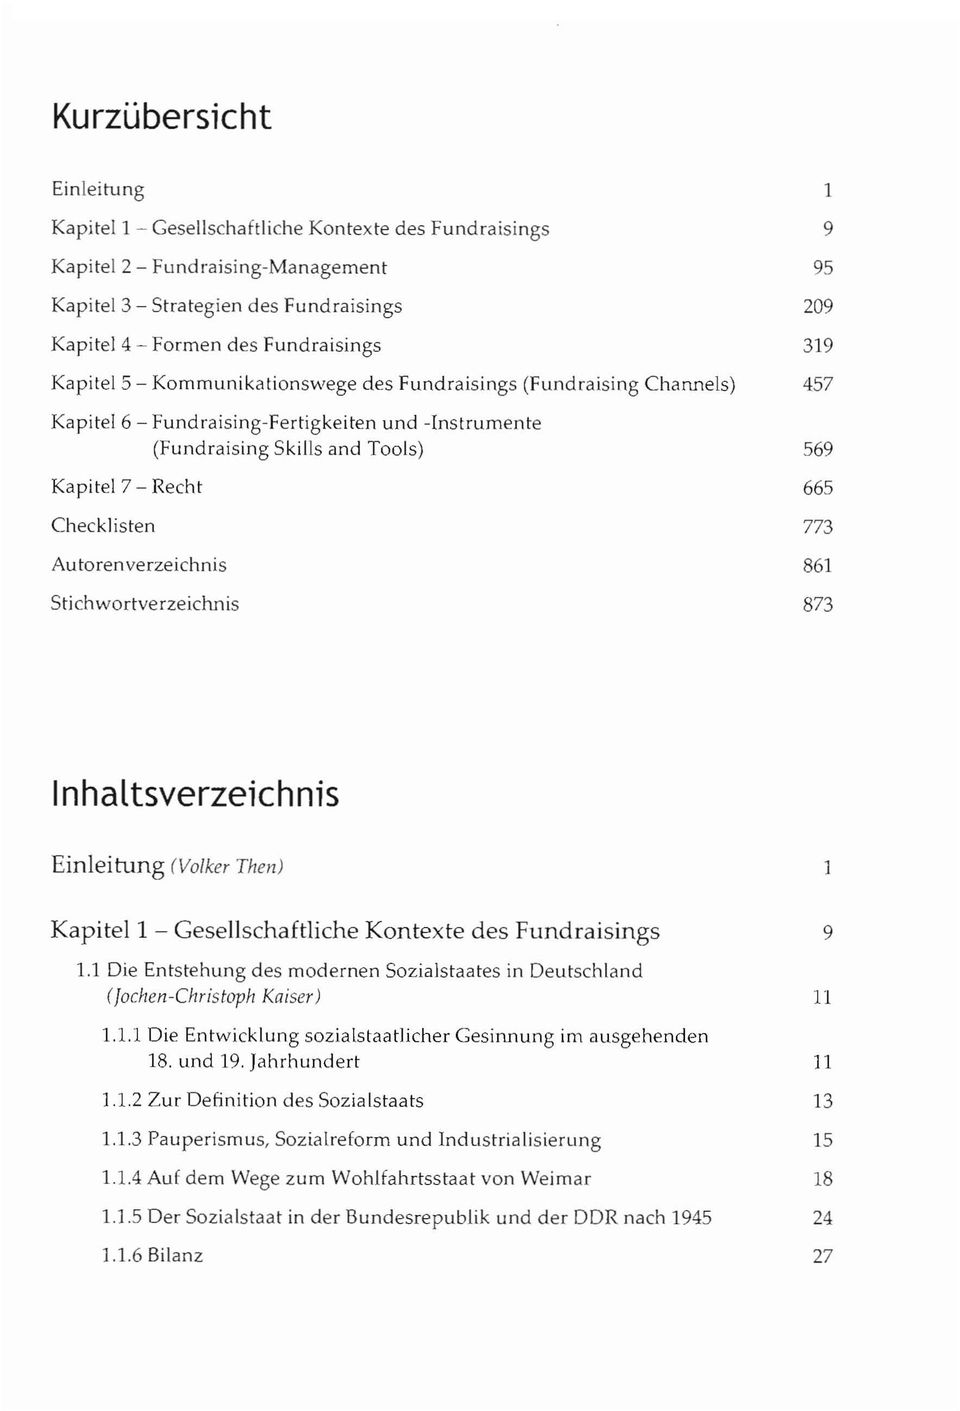 Checklisten 773 Autorenverzeichnis 861 StichwOrtve rzeichnis 873 Inhaltsverzeichnis Einleitung (Volker Then) Kapitell Gesellschaftliche Kontexte des Fundraisings 9 1.